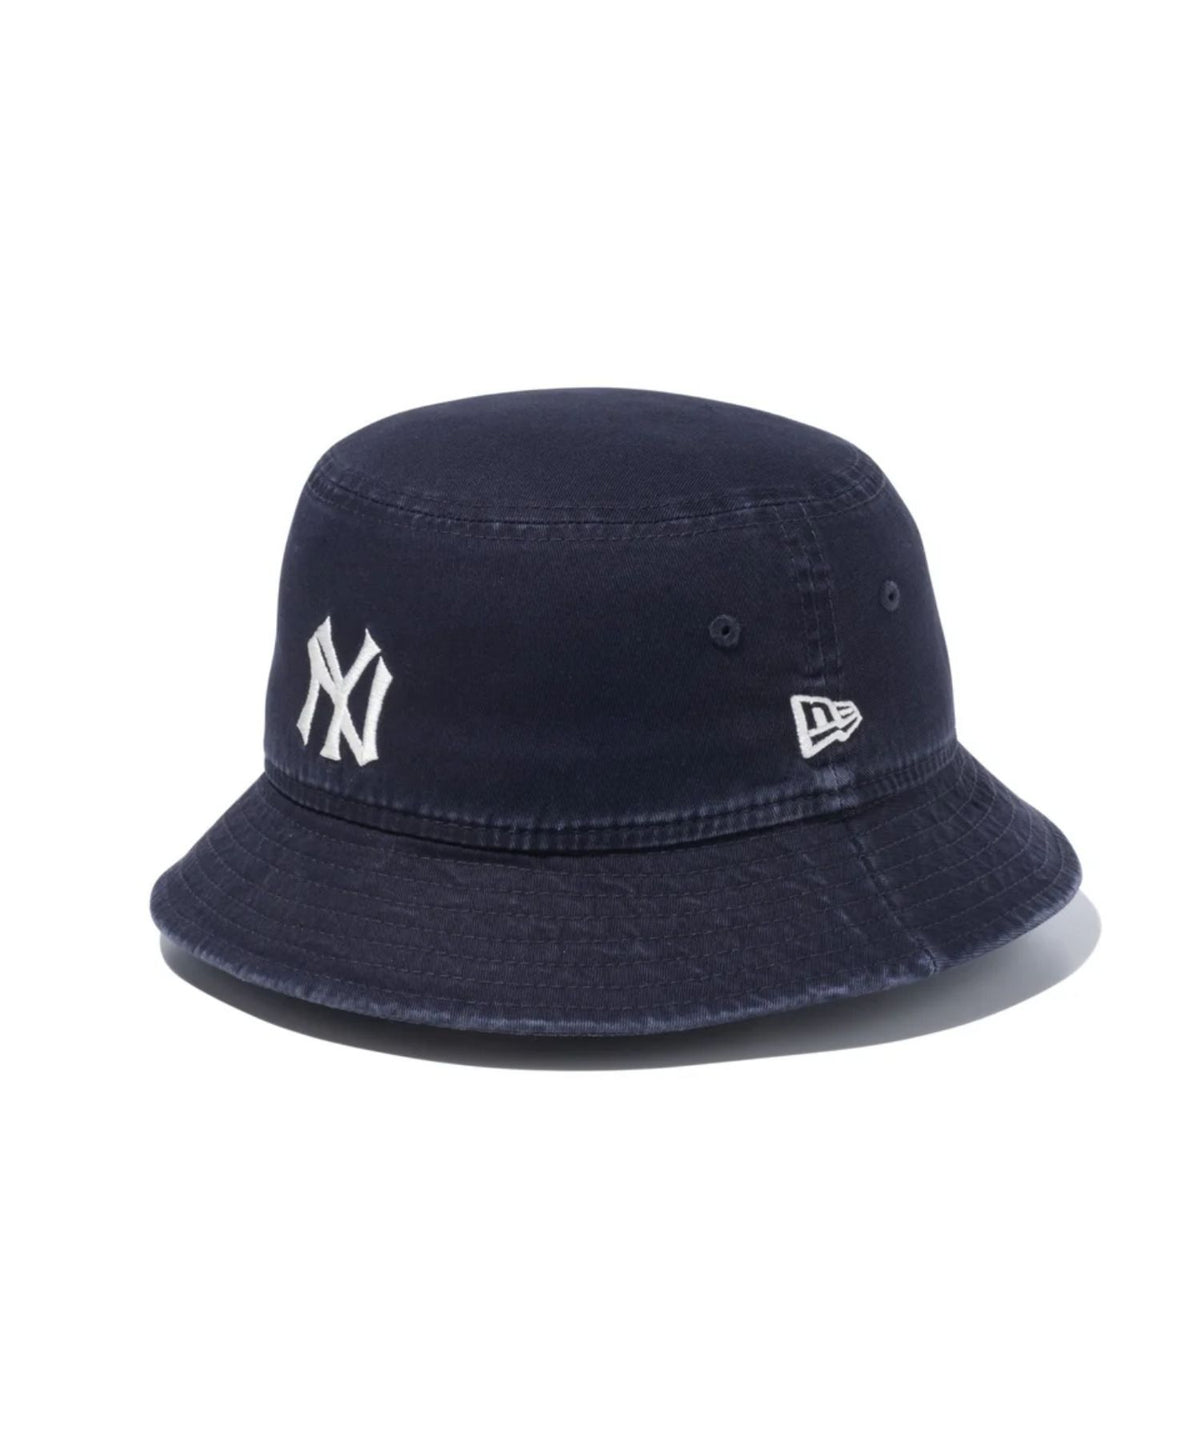 Bucket01 New York Yankees Cooperstown